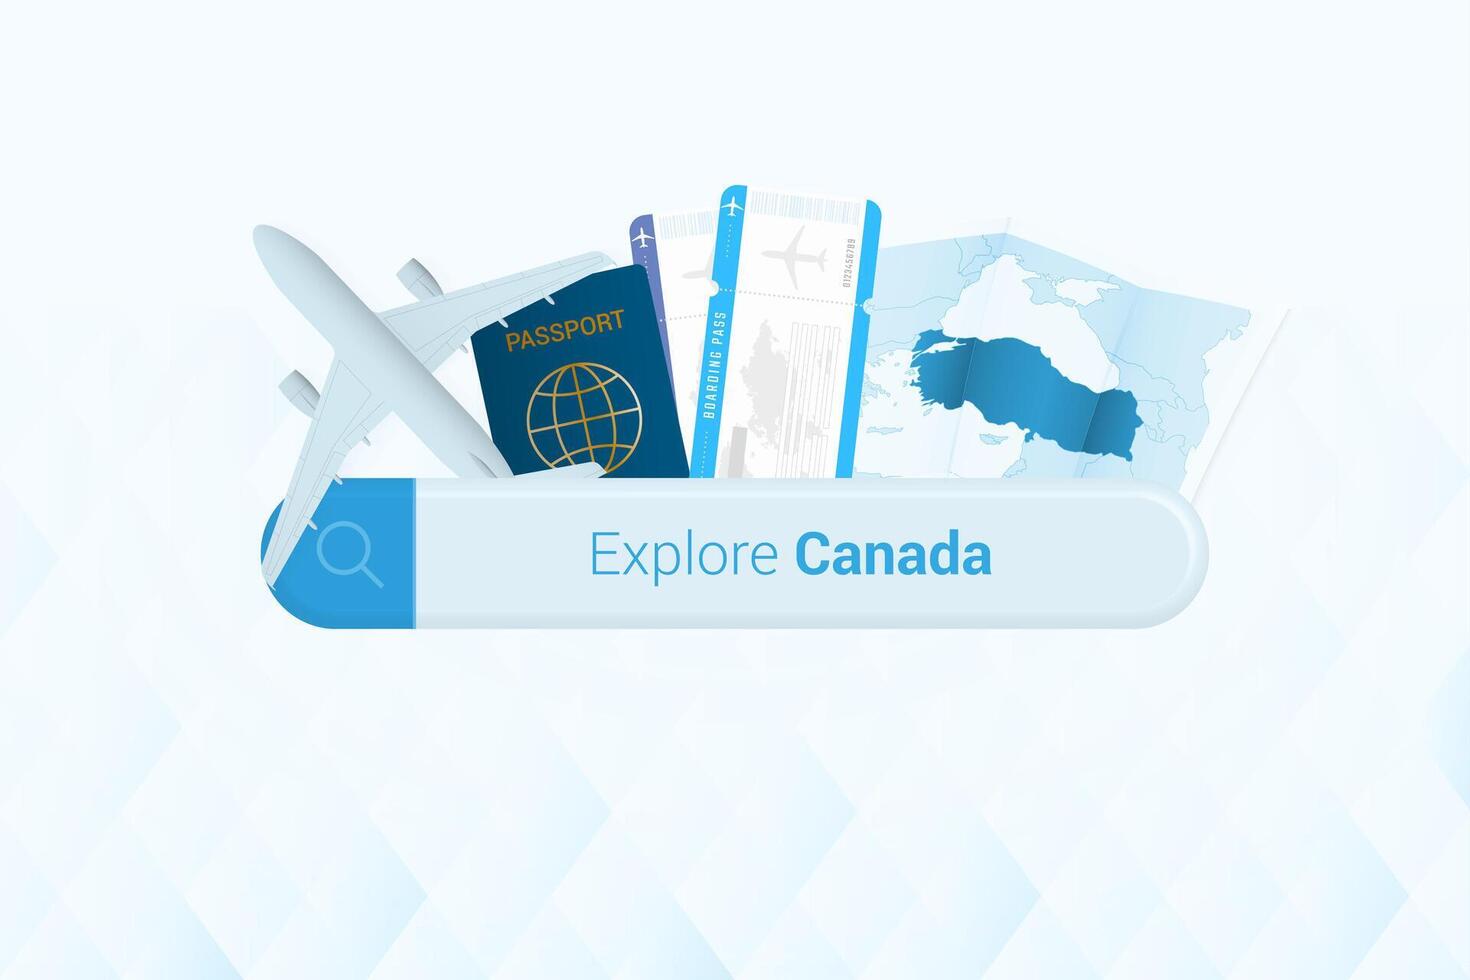 suchen Tickets zu Kanada oder Reise Ziel im Kanada. suchen Bar mit Flugzeug, Reisepass, Einsteigen passieren, Tickets und Karte. vektor